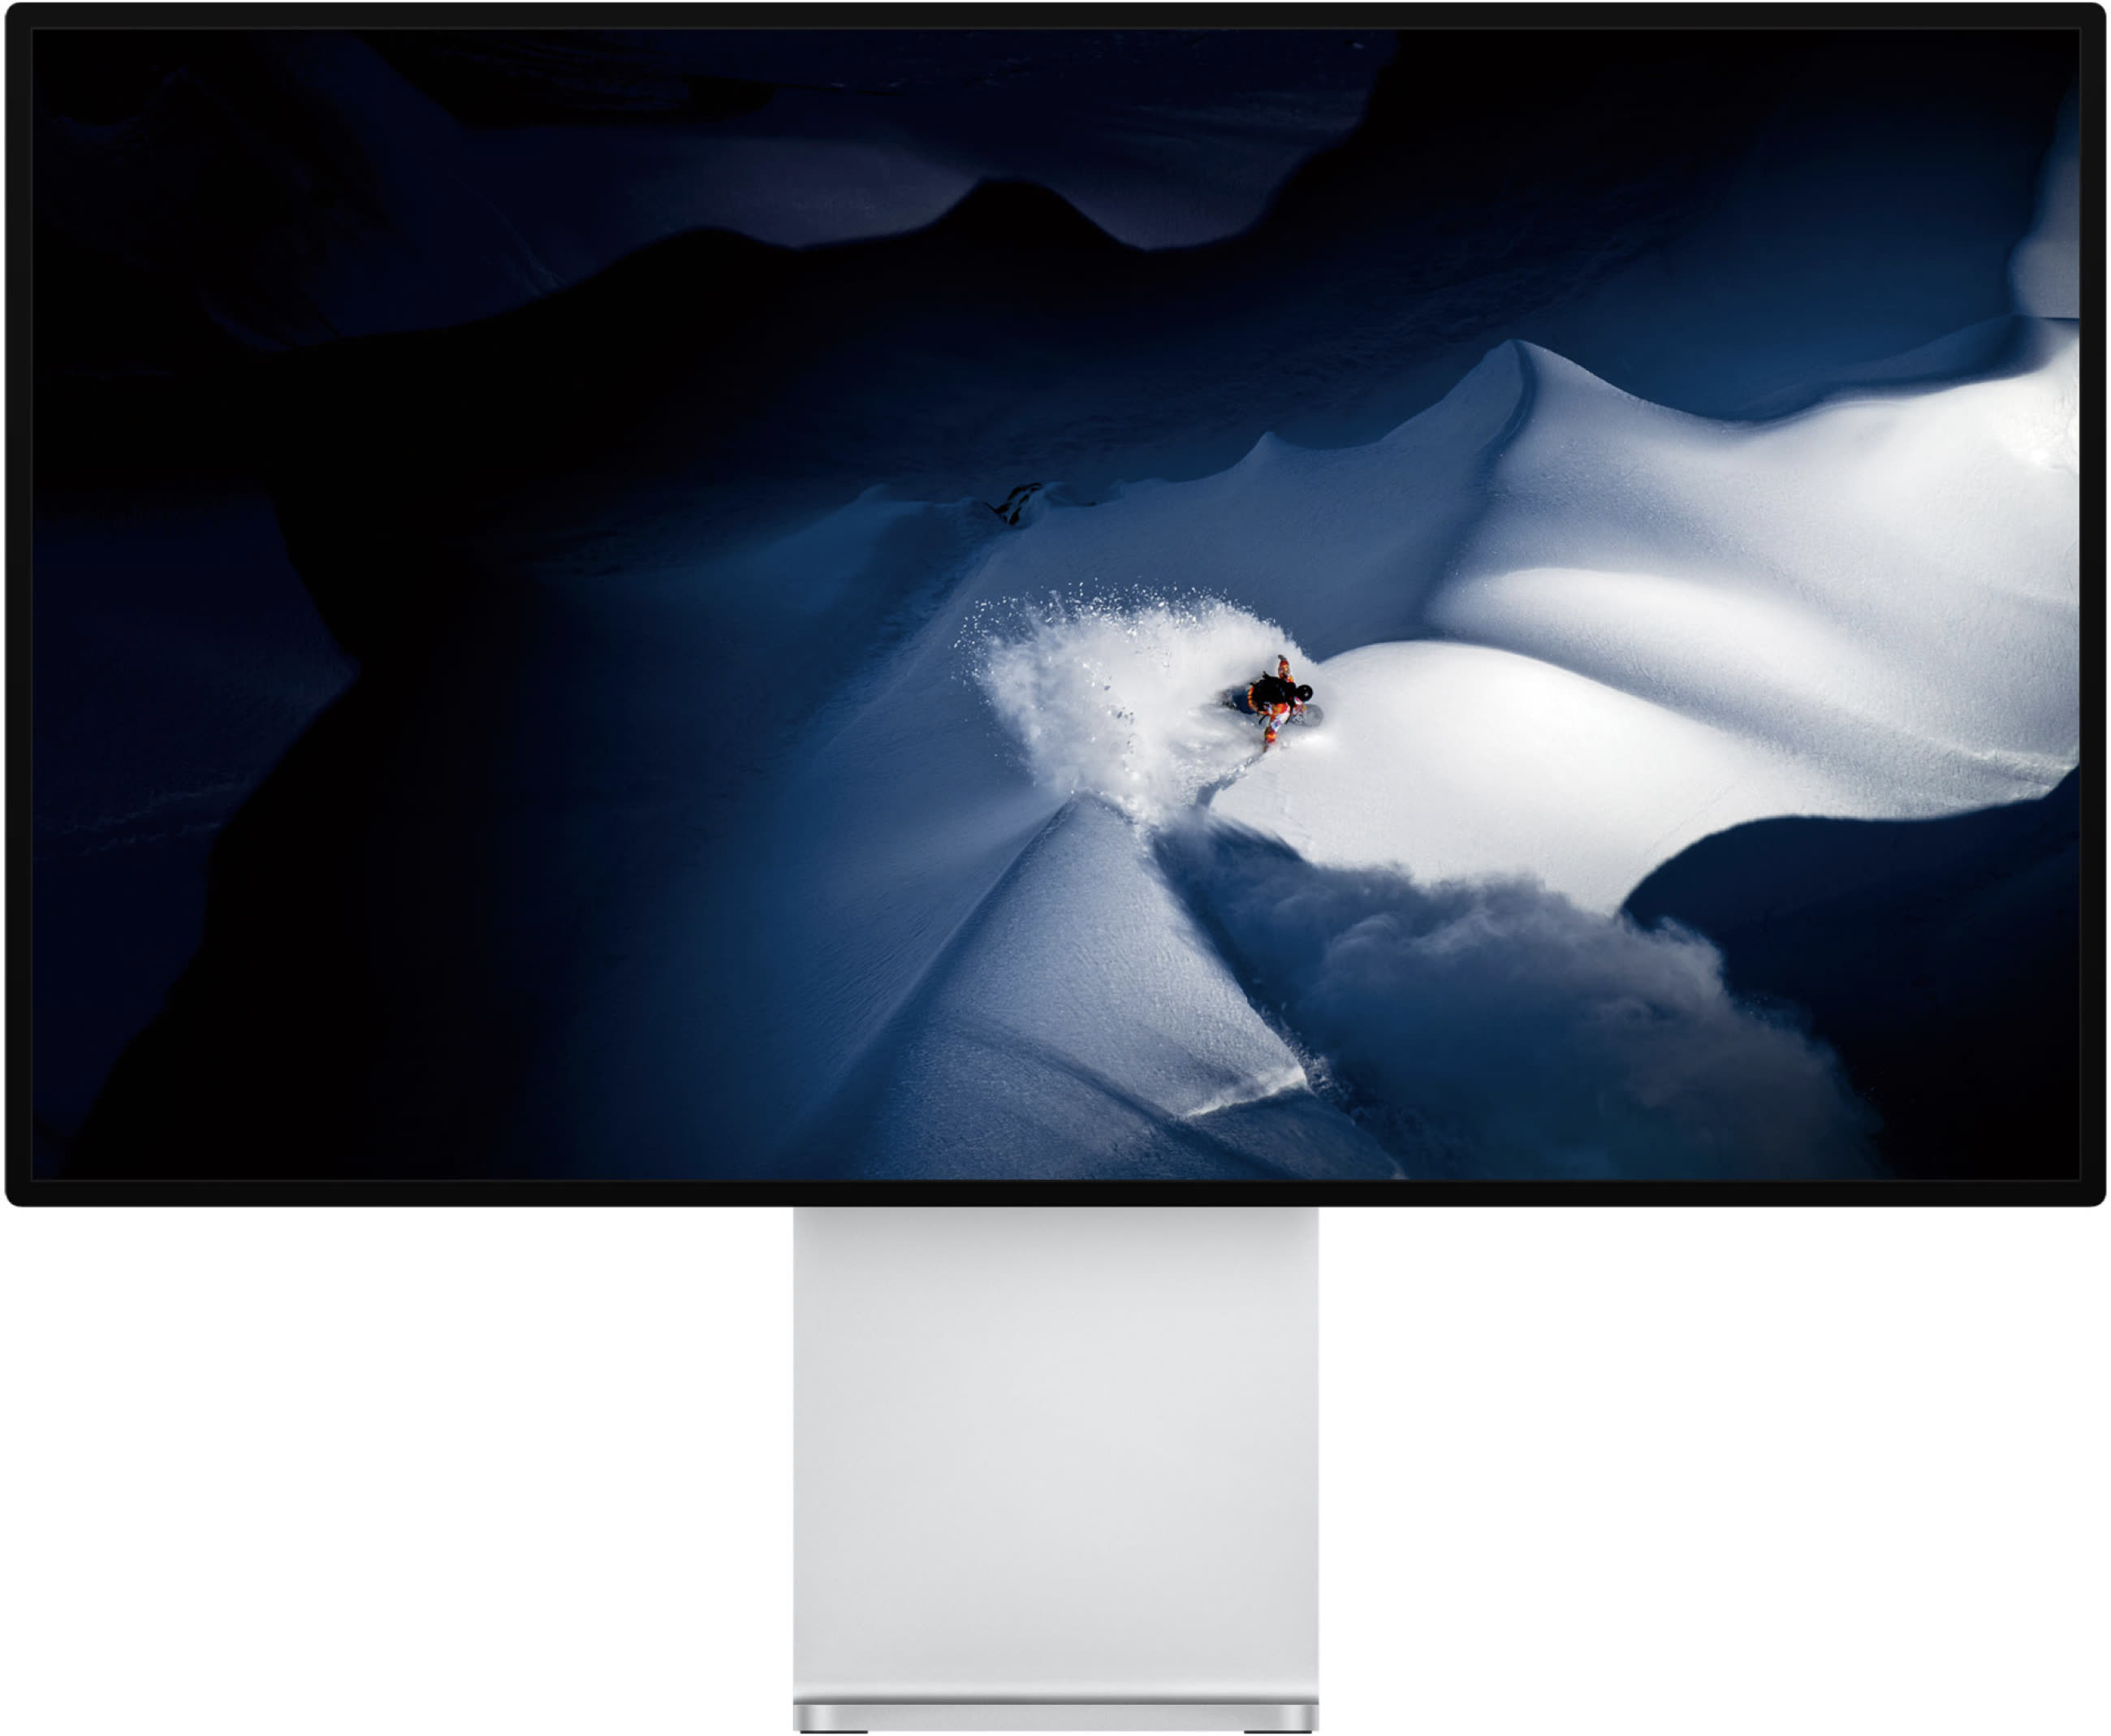 Les prochains iMac pourraient bénéficier d'écrans plus grands que 27 pouces